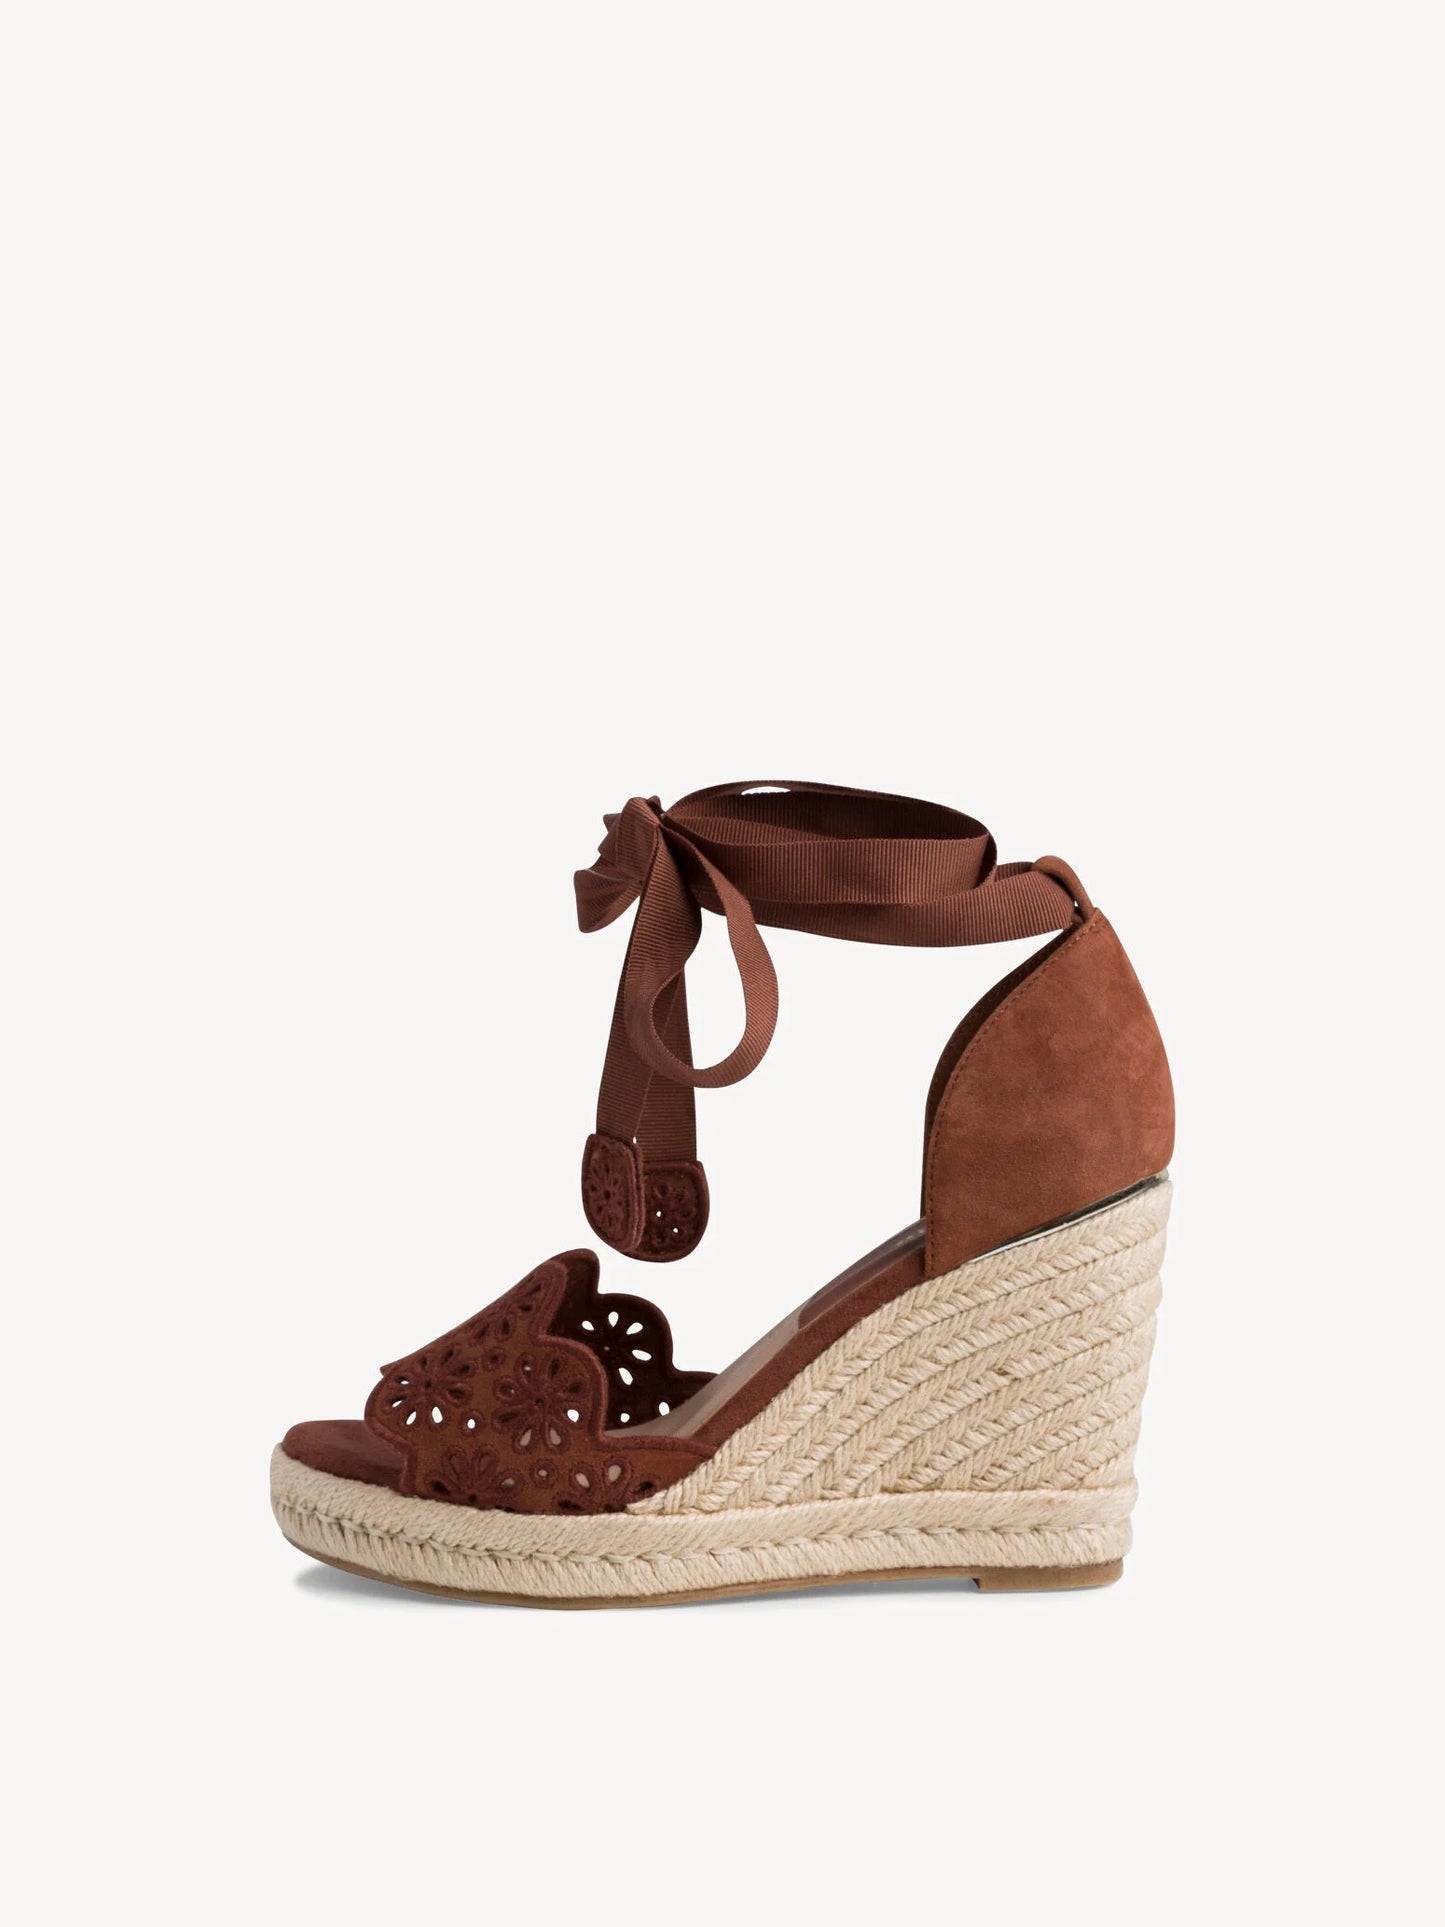 Tamaris Women's 1-28393-26 Leather Wedge Heel Sandals Chocolate Brown